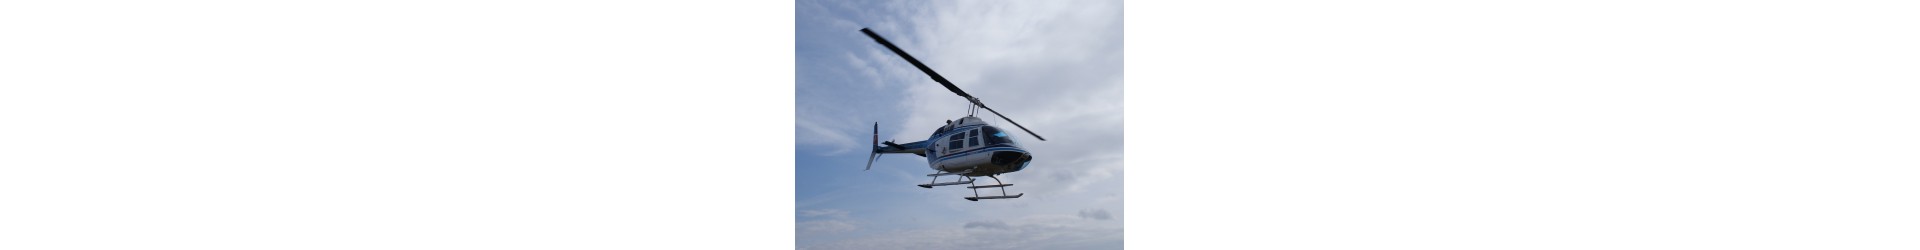 Increíble vuelo en helicóptero: Perspectiva única desde las alturas